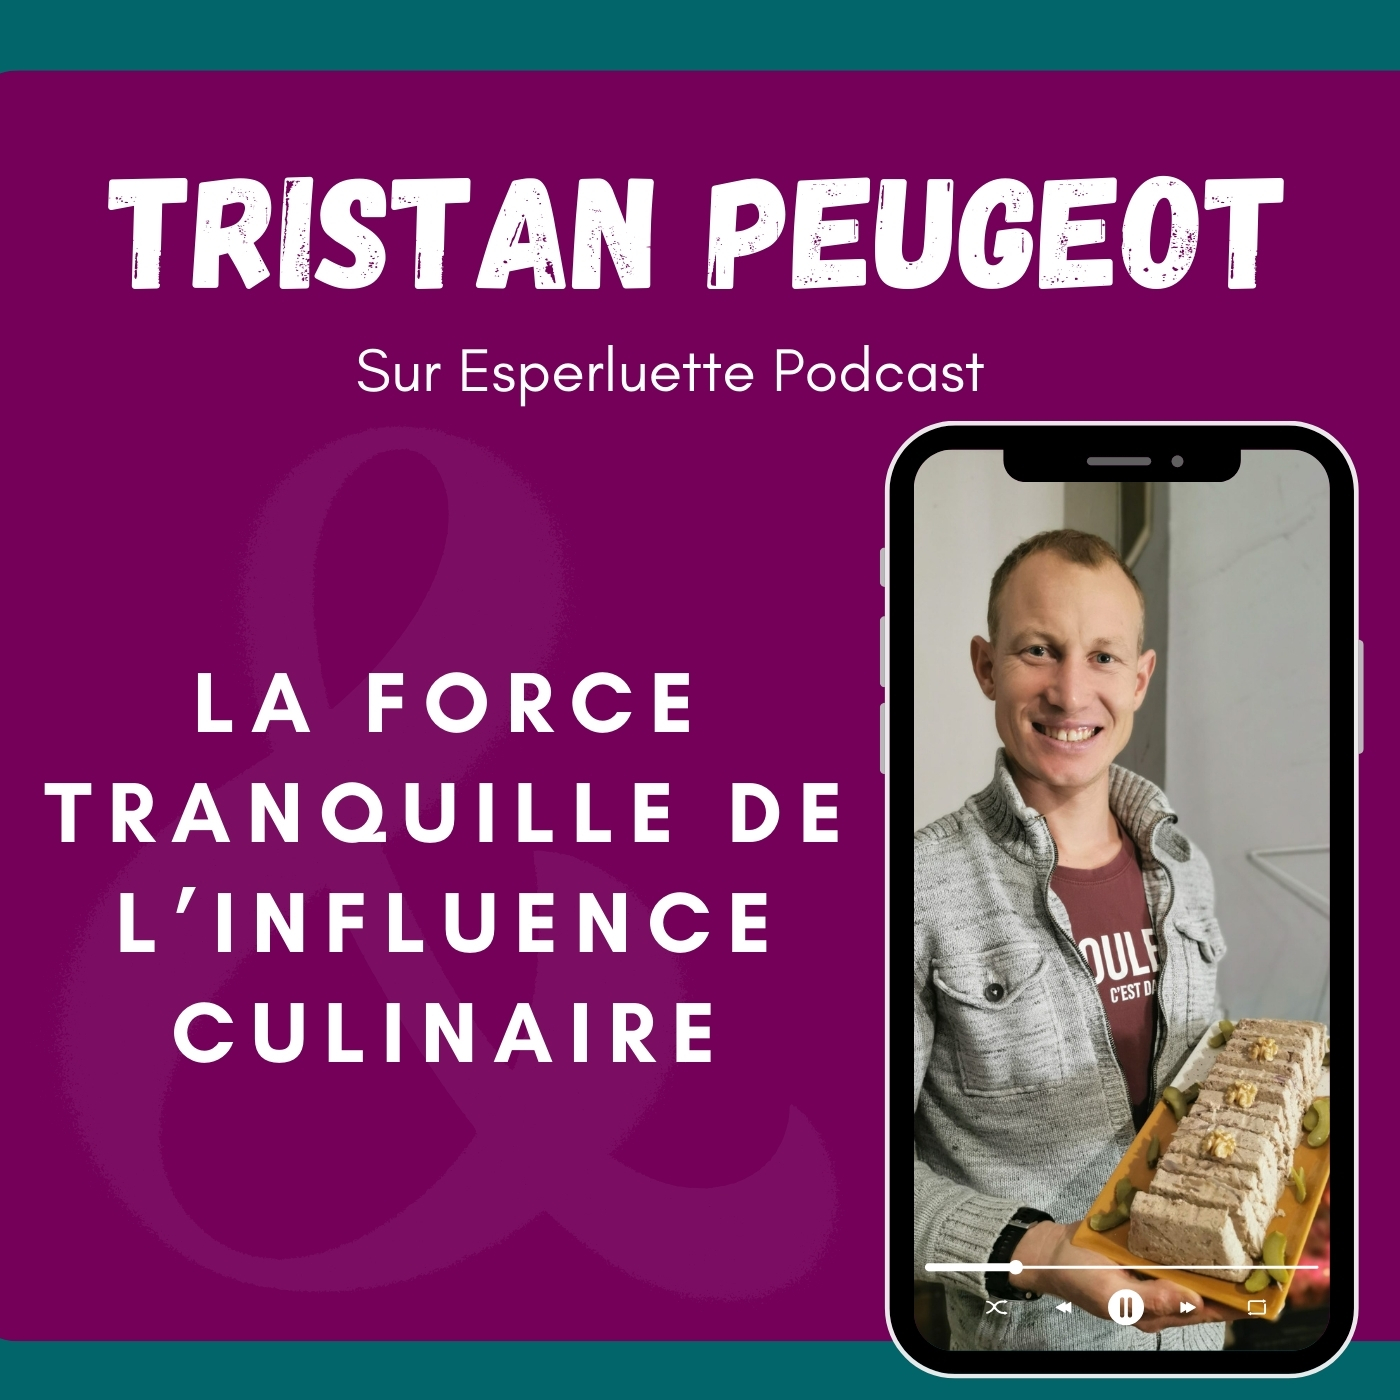 Tristan Peugeot, la force tranquille de l’influence culinaire